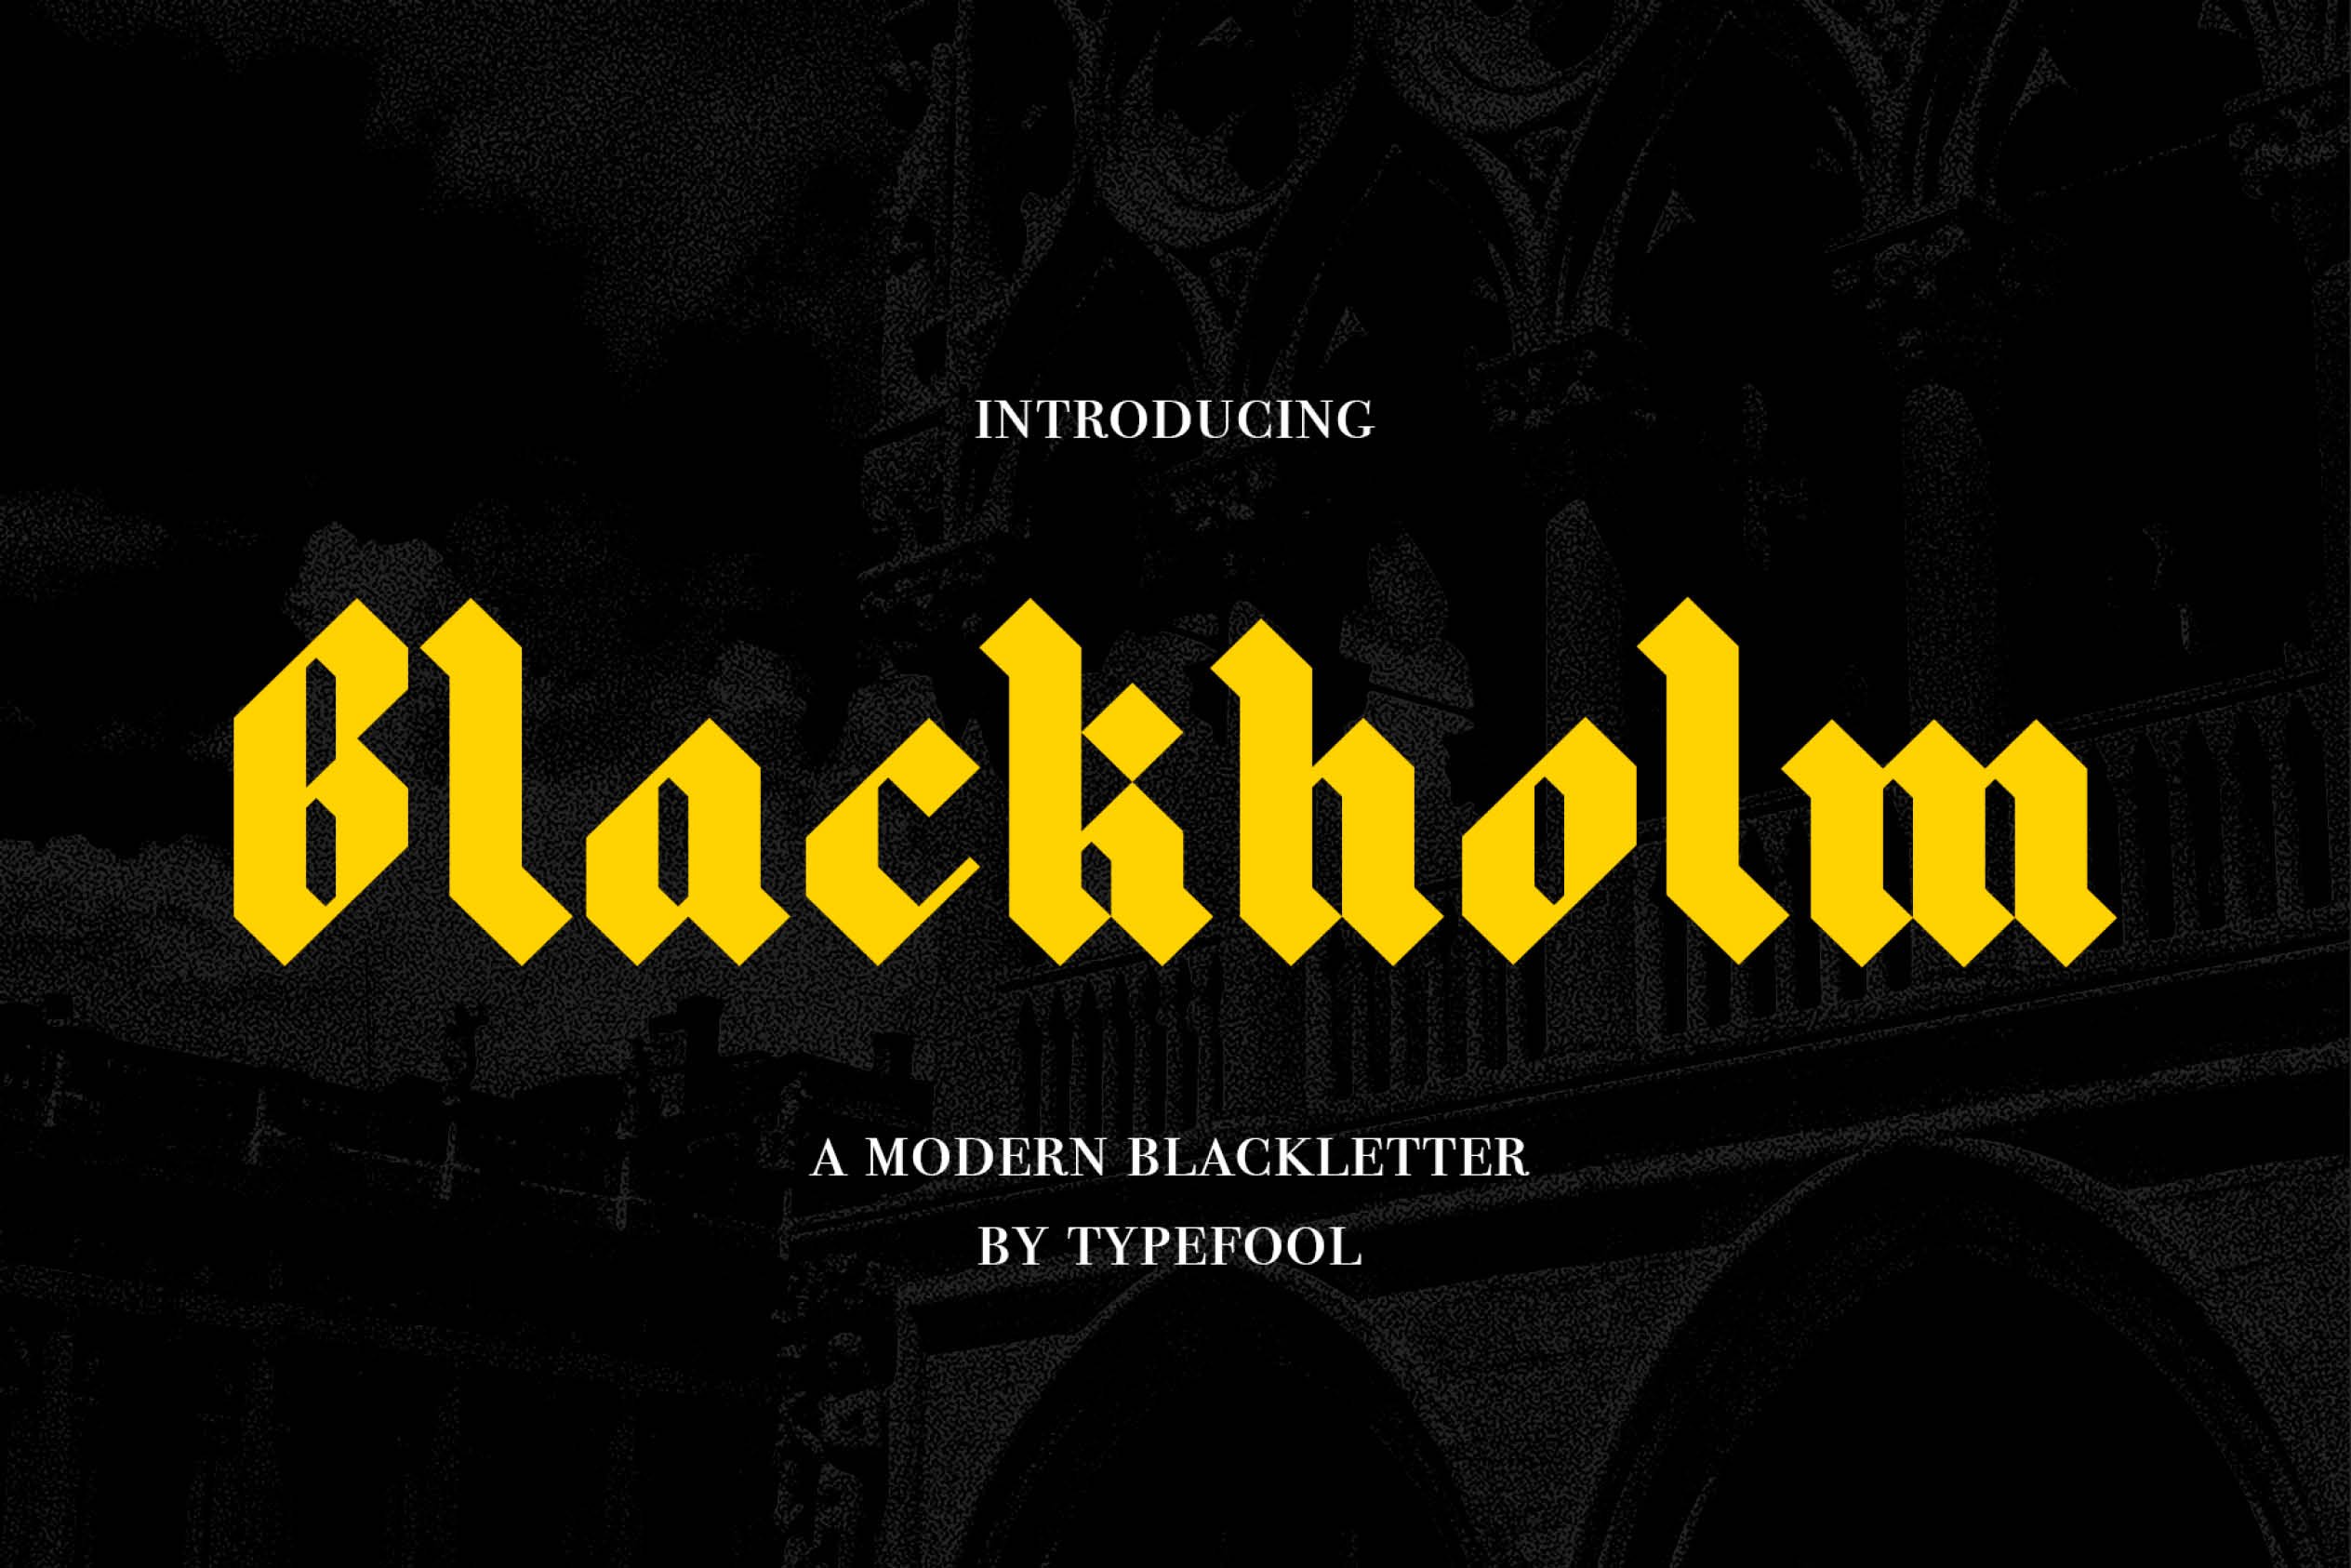 Blackholm - Blackletter font cover image.